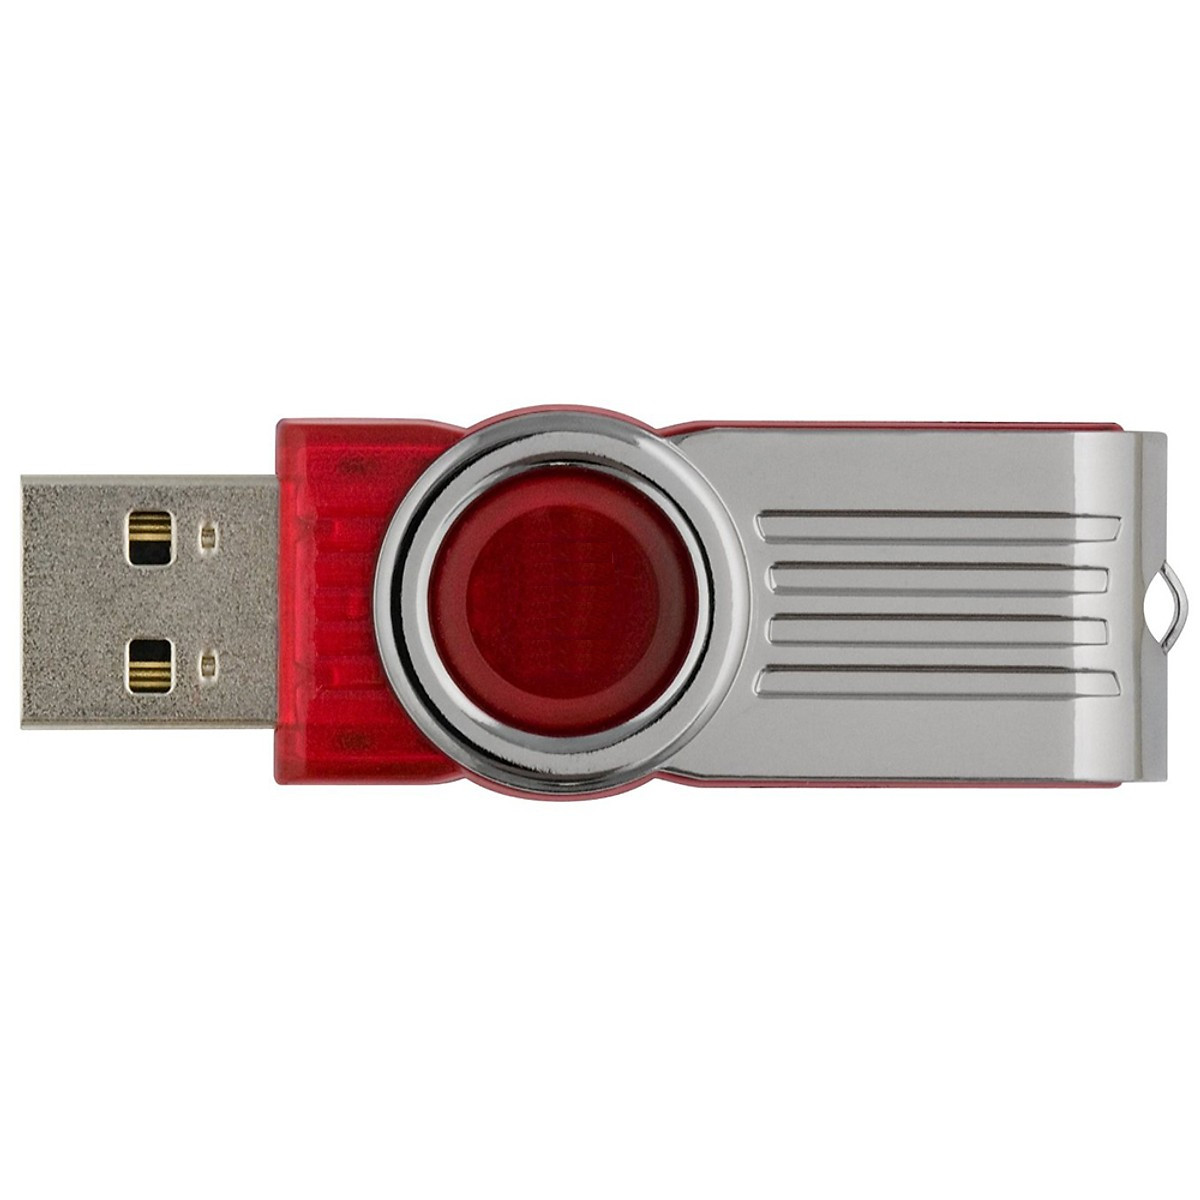 USB thẻ nhớ DT101G2 - 8GB